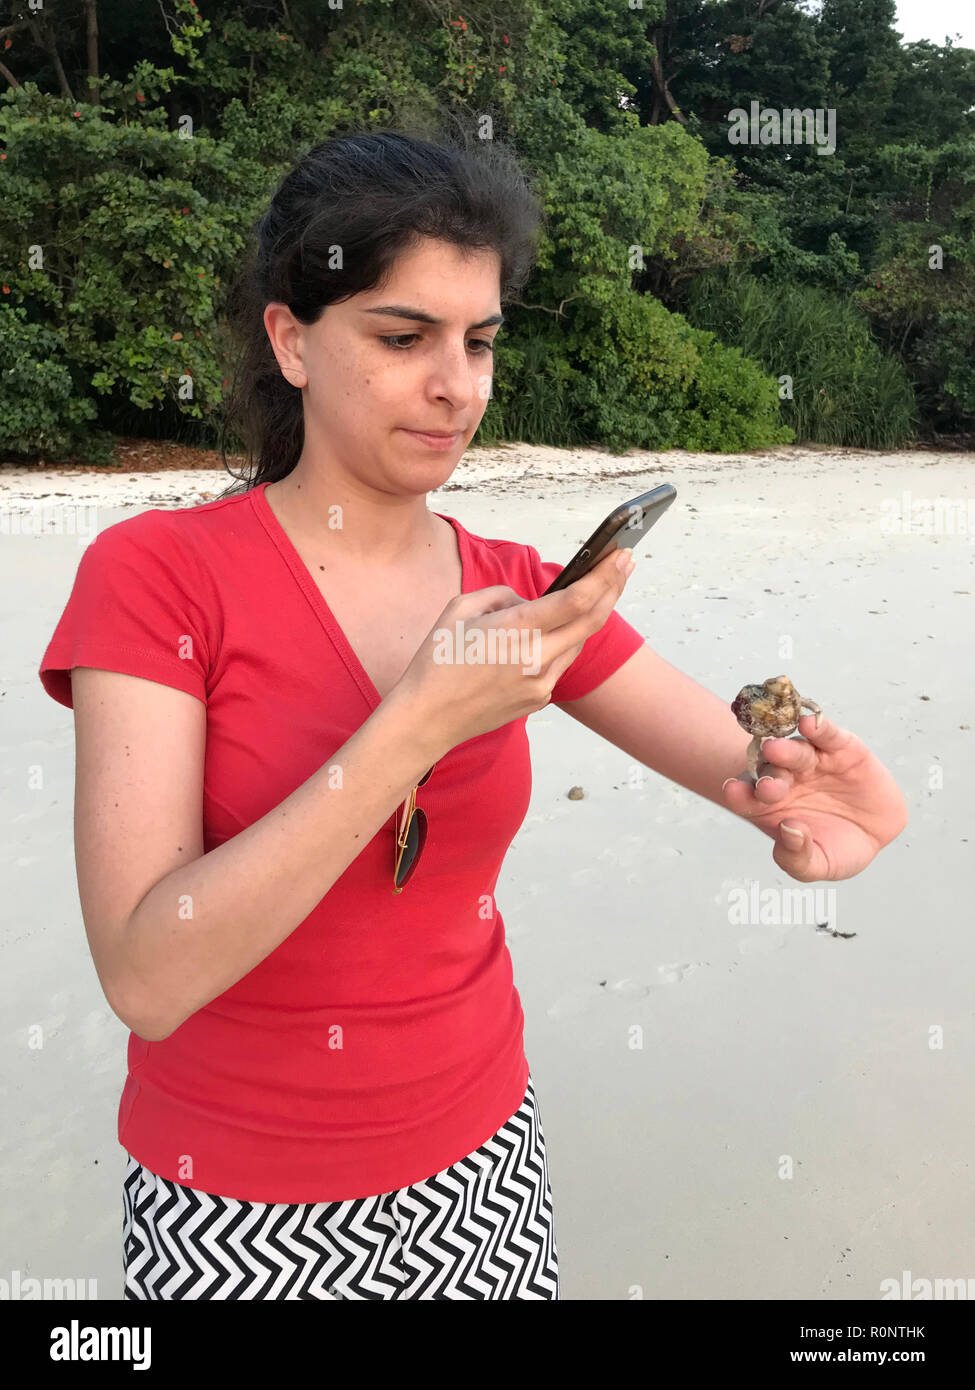 Mujer de pie en la playa fotografiando un cangrejo ermitaño en su mano, las Islas Andamán, India Foto de stock